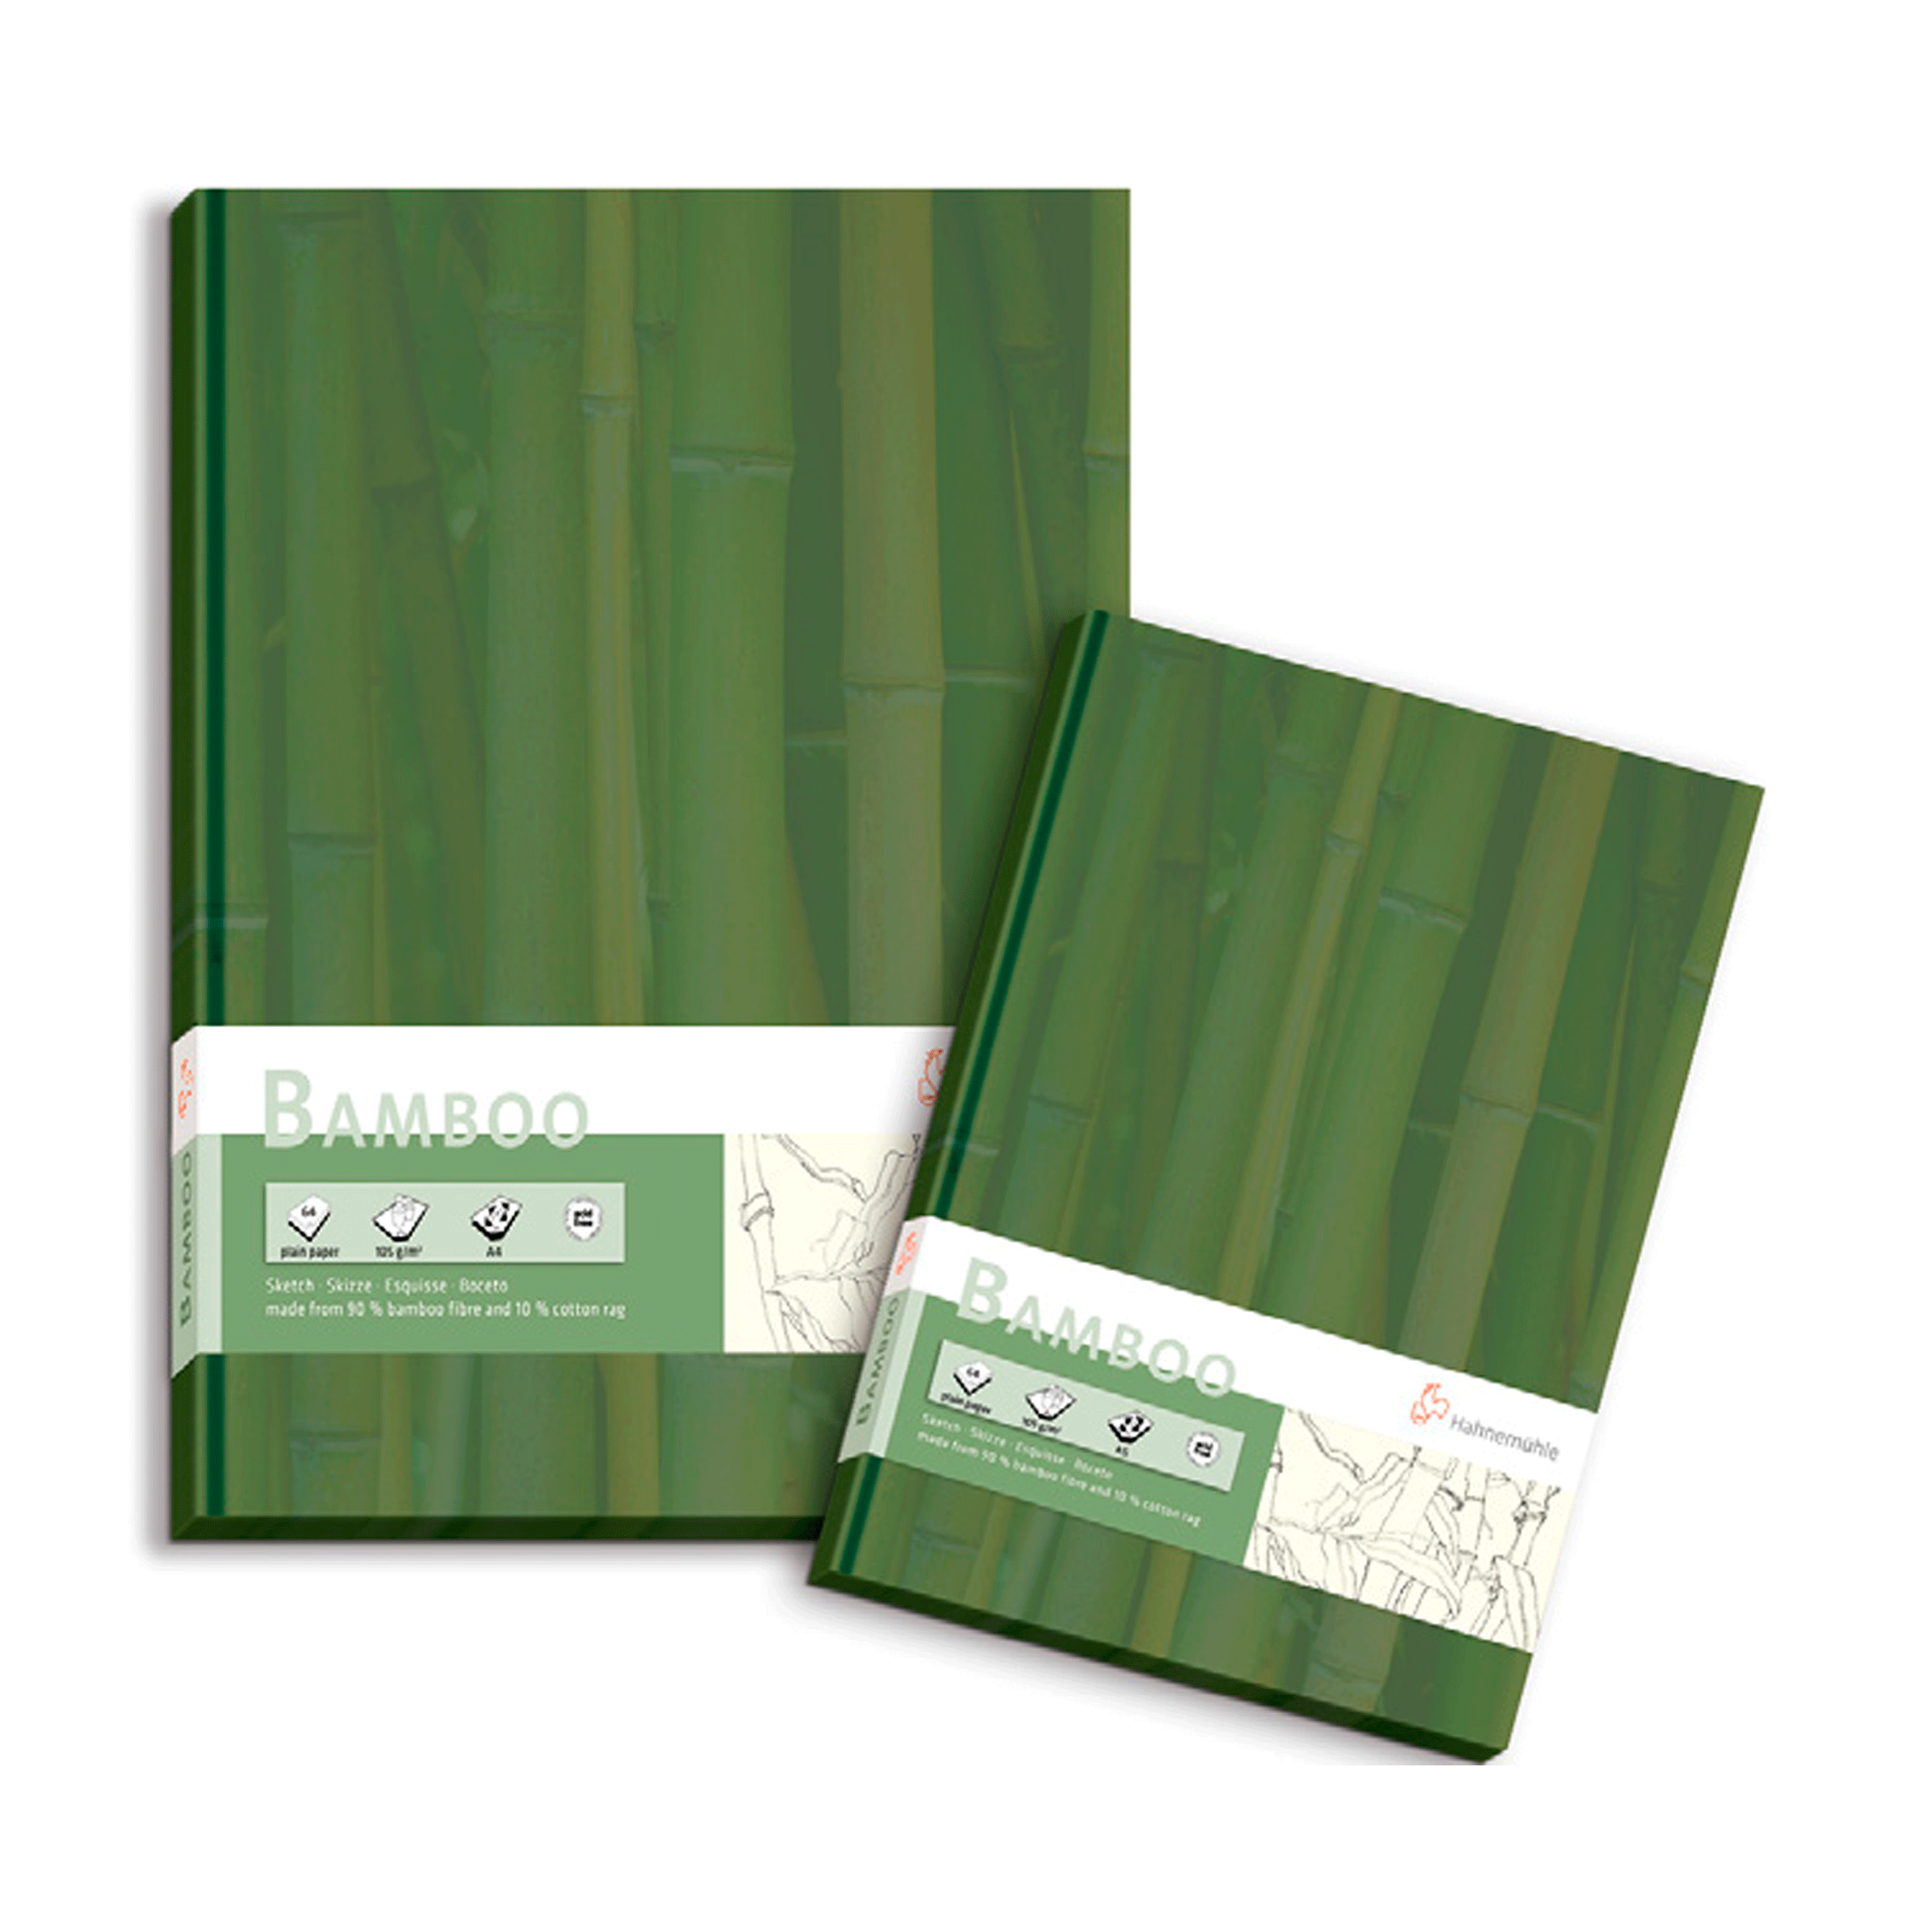 Hahnemühle  - libro hoja de bamboo para técnica mixta